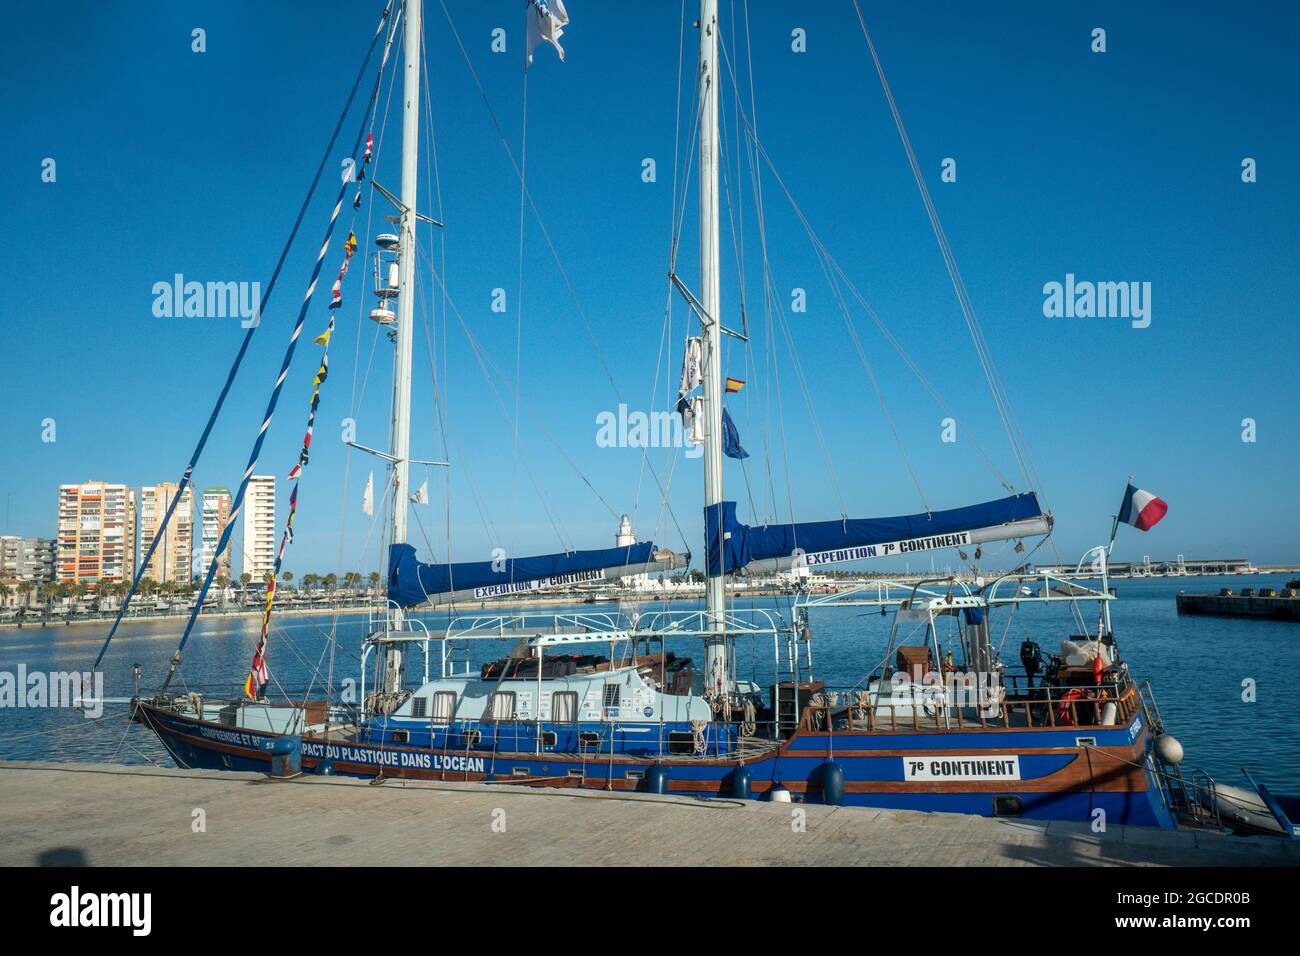 Boot der Expedition 7th Continent im Hafen von Malaga, benannt nach dem 7. Kontinent des Plastikmuells in den Weltmeeren, Spanien Stock Photo